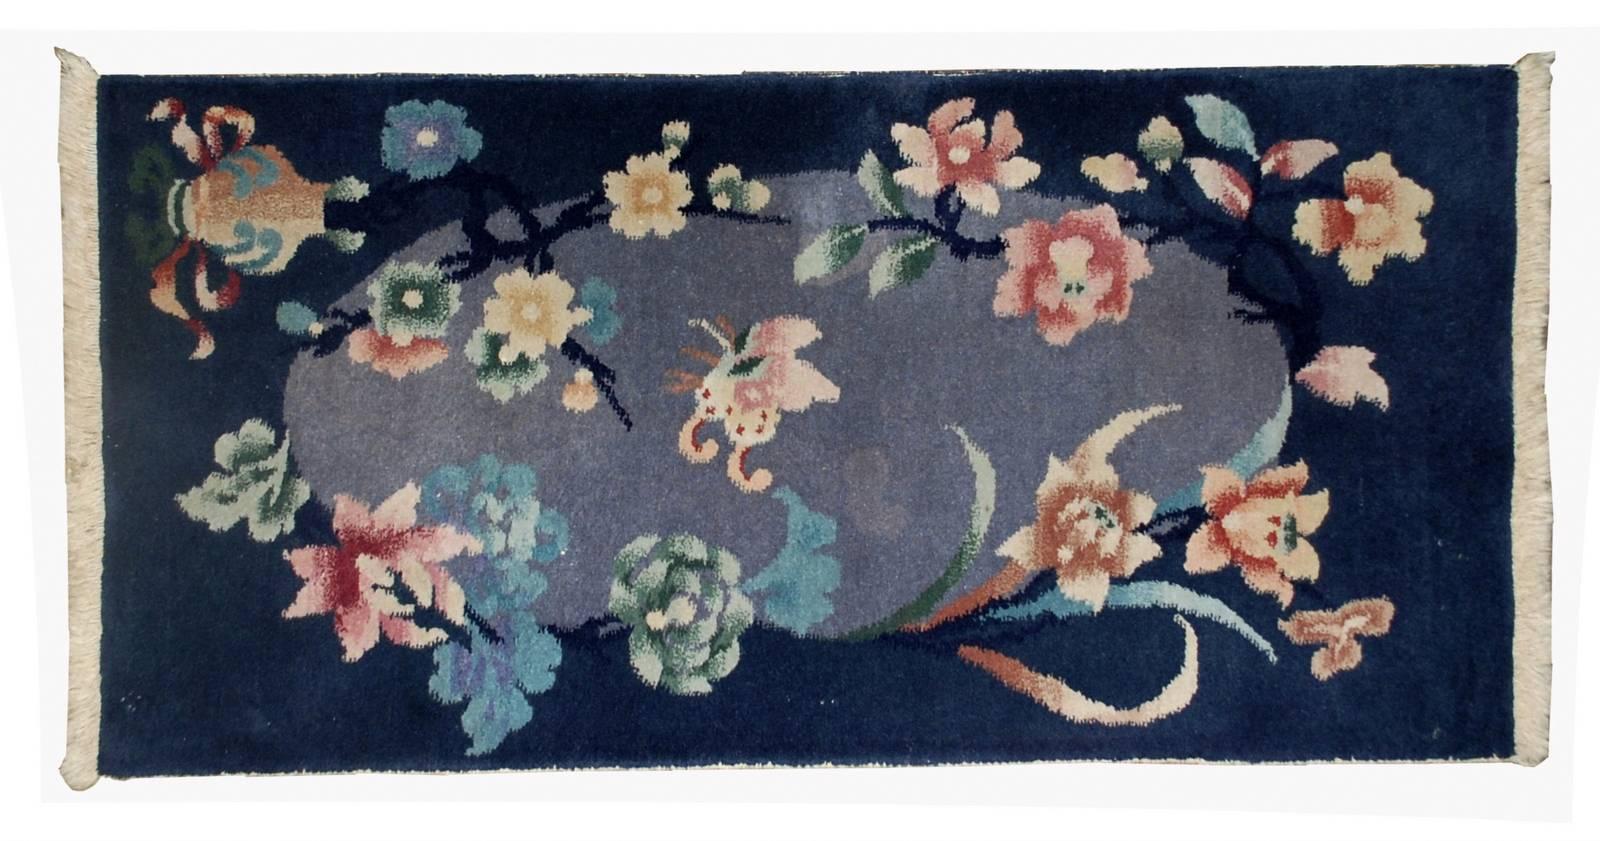 Handgefertigter antiker chinesischer Art-Déco-Teppich im Originalzustand. Der Teppich ist in einem nachtblauen Farbton für den Rand mit einem ovalen zentralen Bereich in einem grauen Farbton gehalten. Es ist floral und mit großen Blumen im